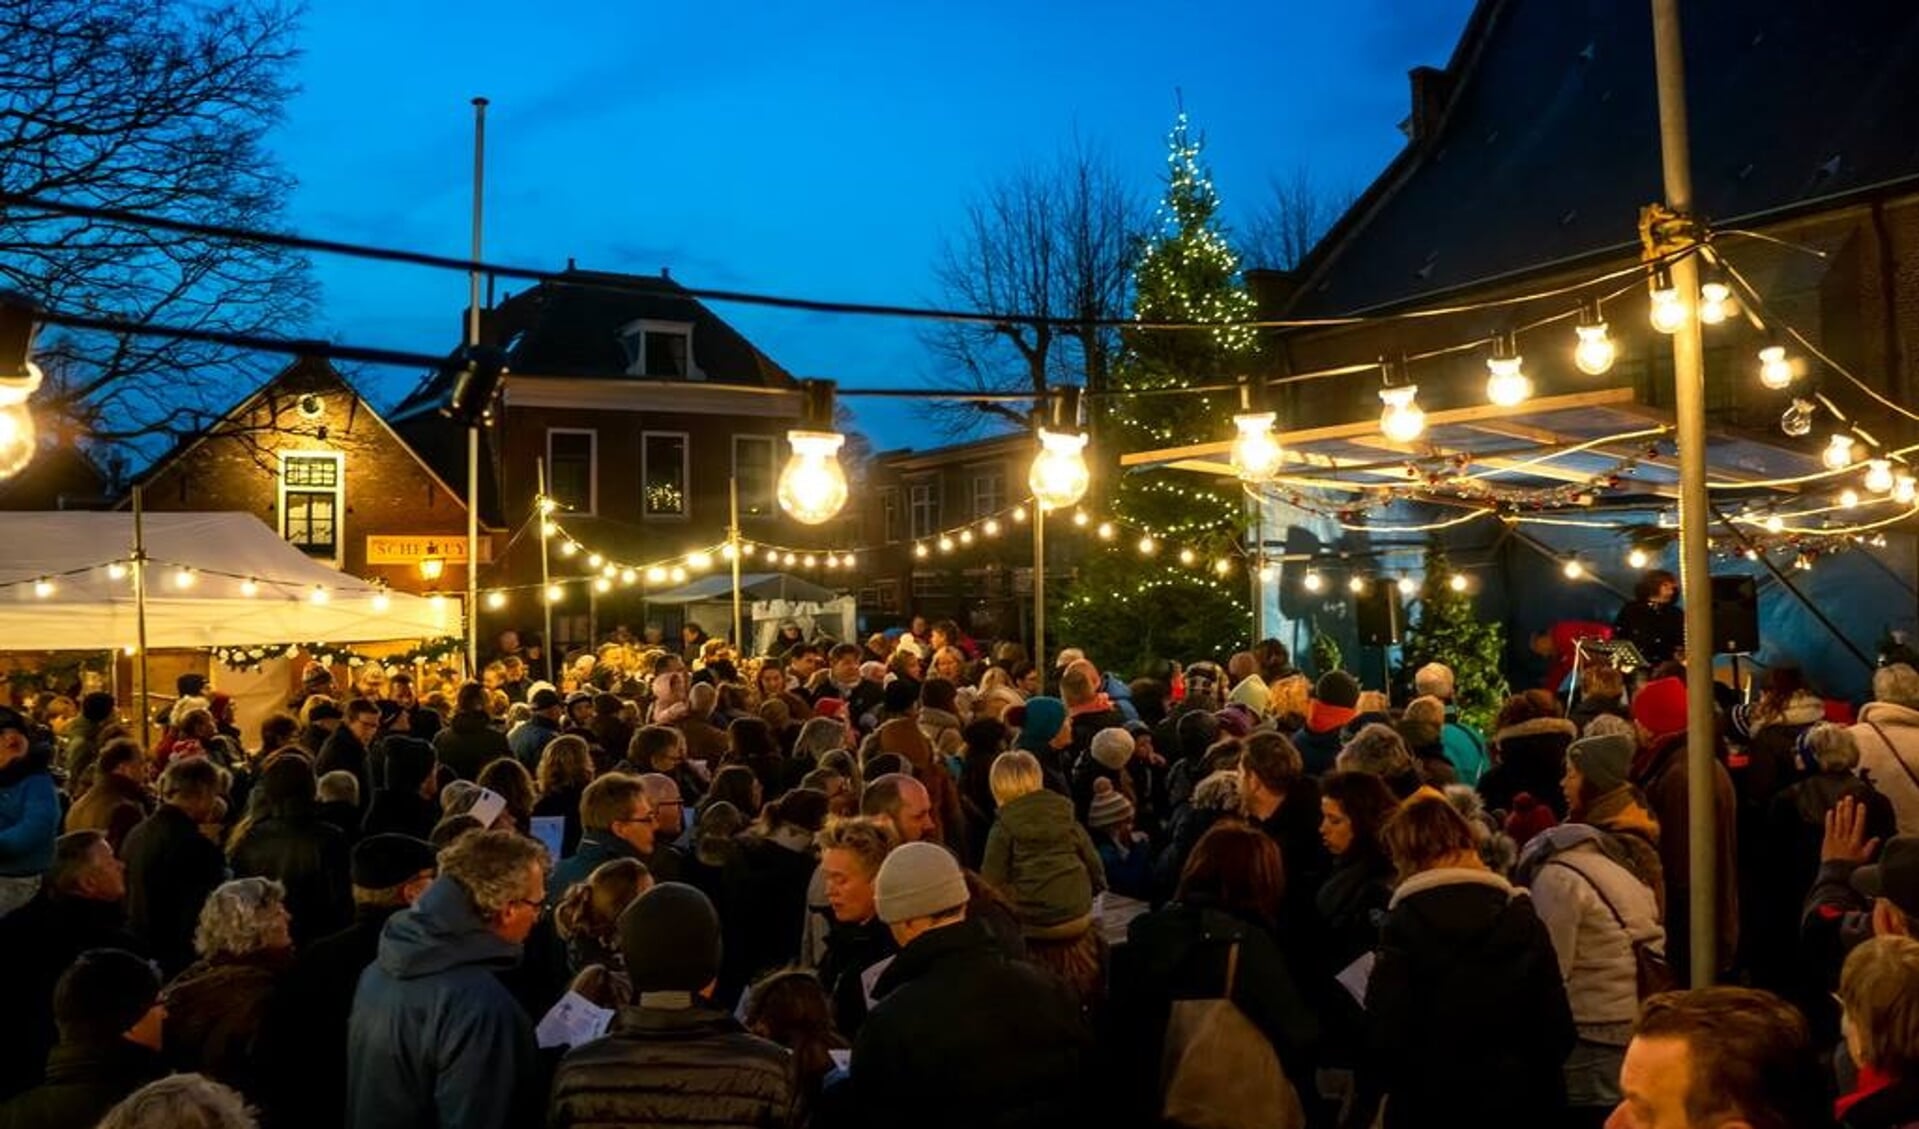 Razend druk was het zaterdagavond bij de Dorpskerk toen daar de Vrienden van het Oude Dorp daar de lichtjes in de grote kerstboom ontstaken. 